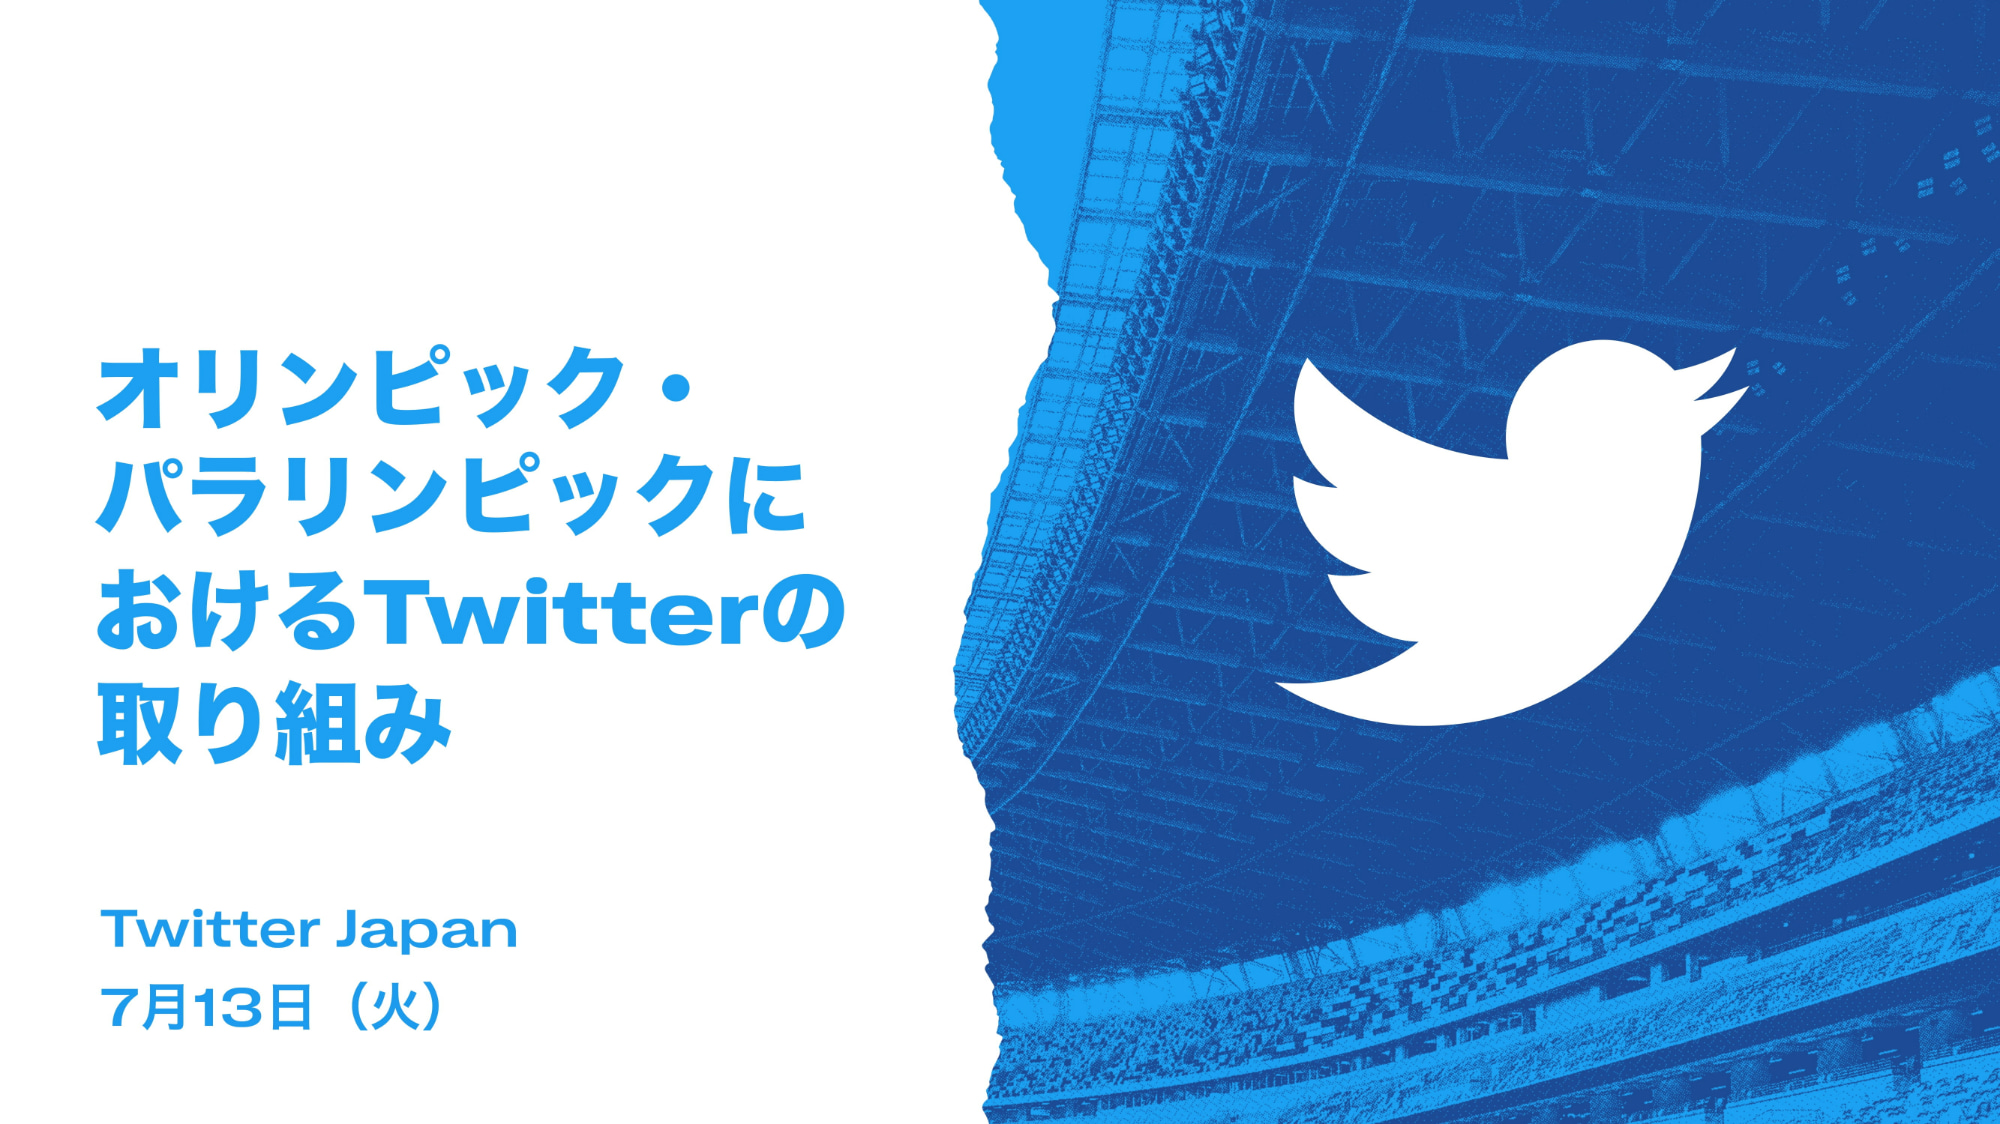 Twitter、東京五輪のデマ対策は「2020年の米大統領選に近い形」か